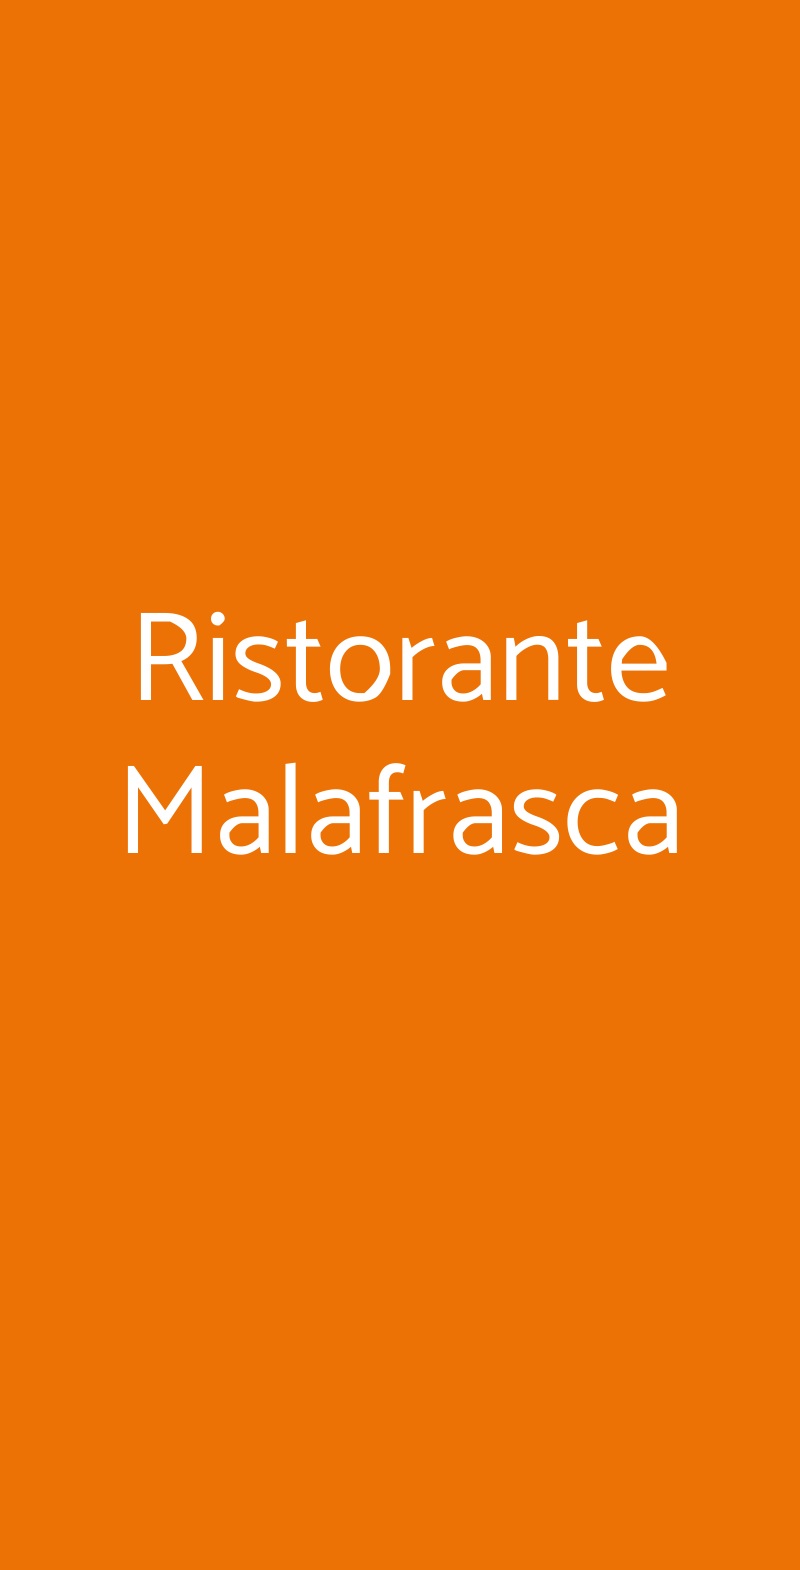 Ristorante Malafrasca Siena menù 1 pagina